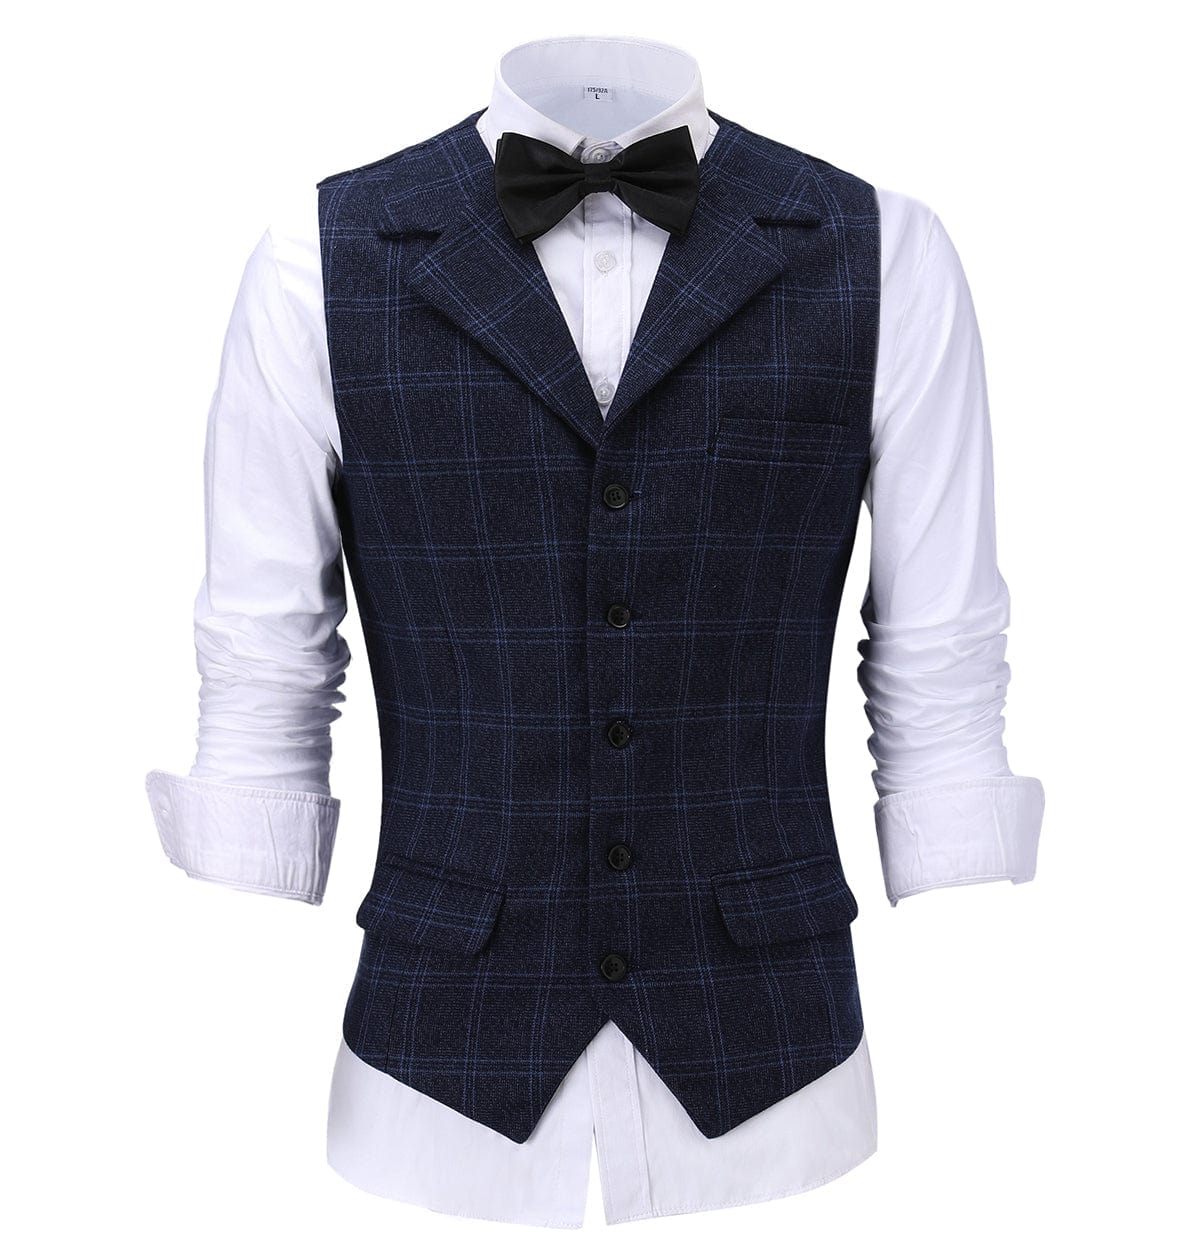 ceehuteey Men's Suit Vests Fashion Notch Lapel Waistcoat